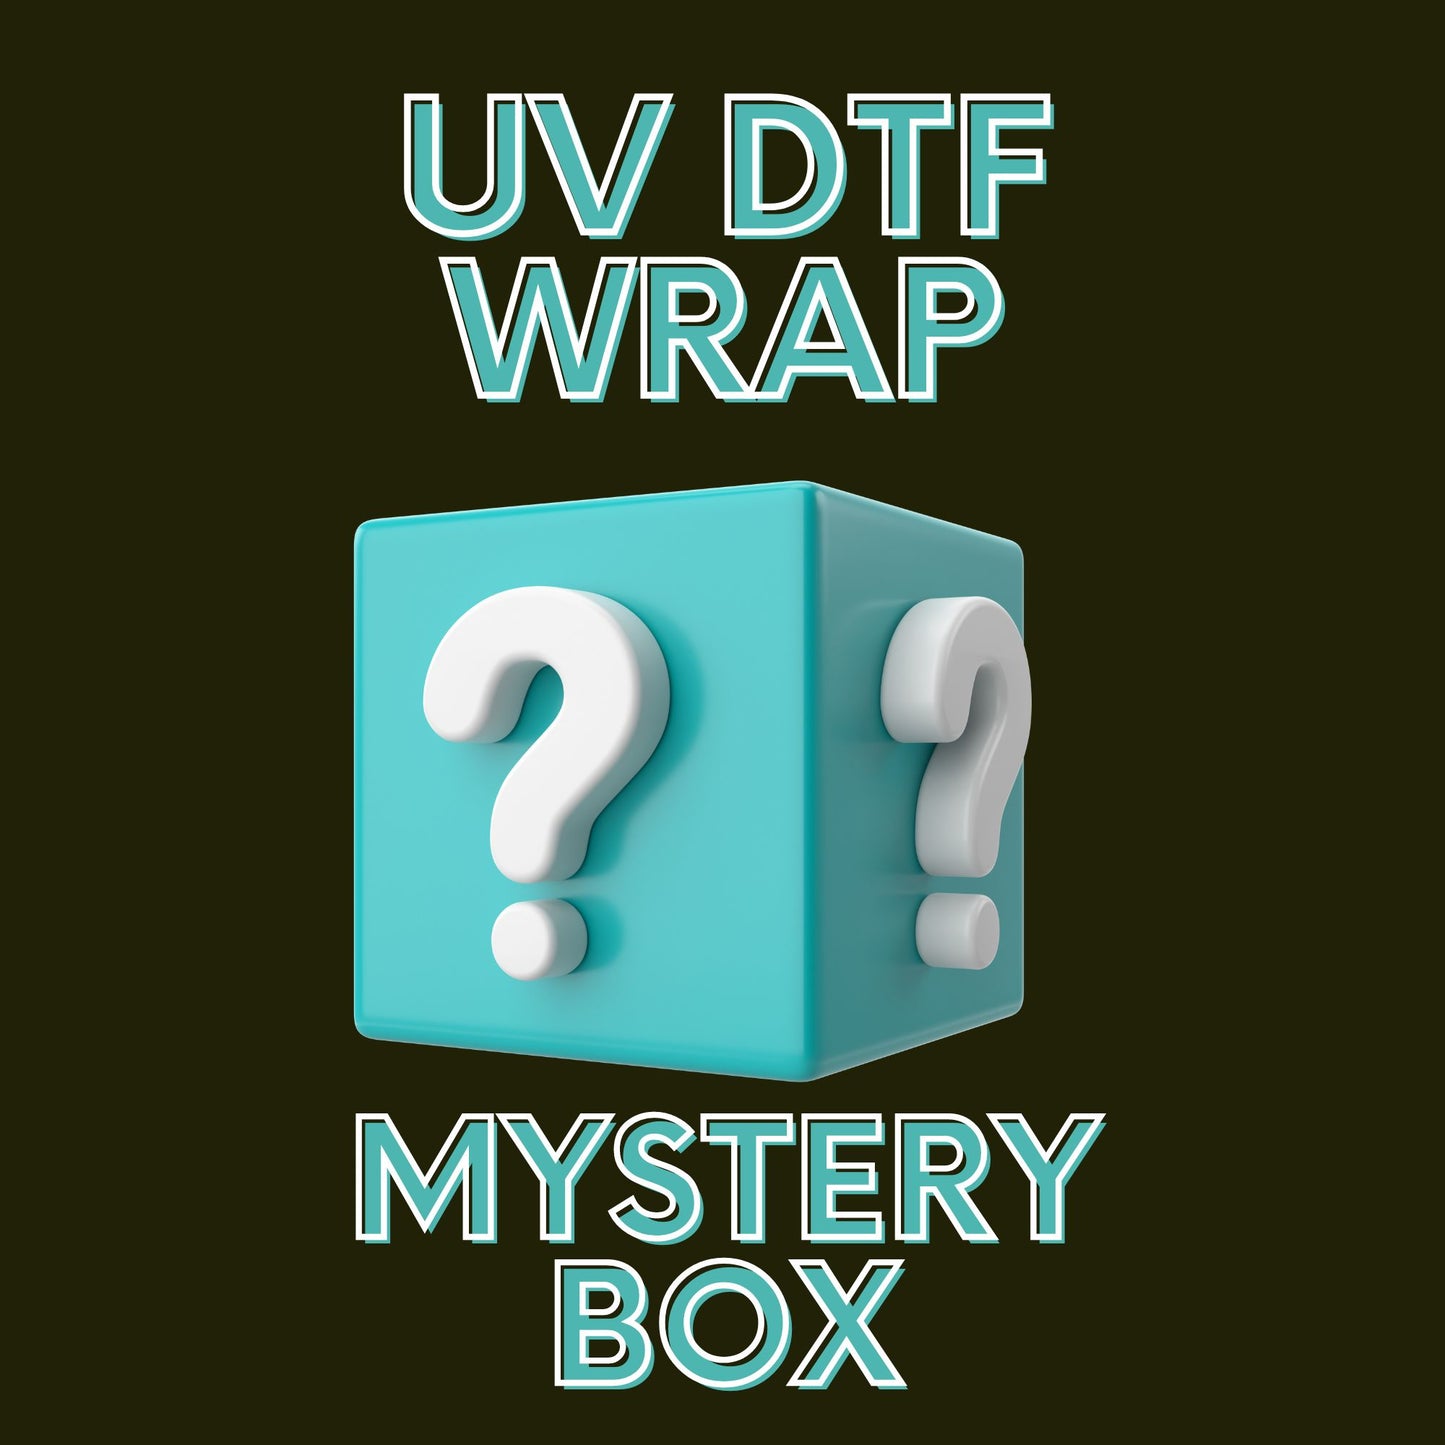 UV DTF Wrap Mystery Box- 5 wraps